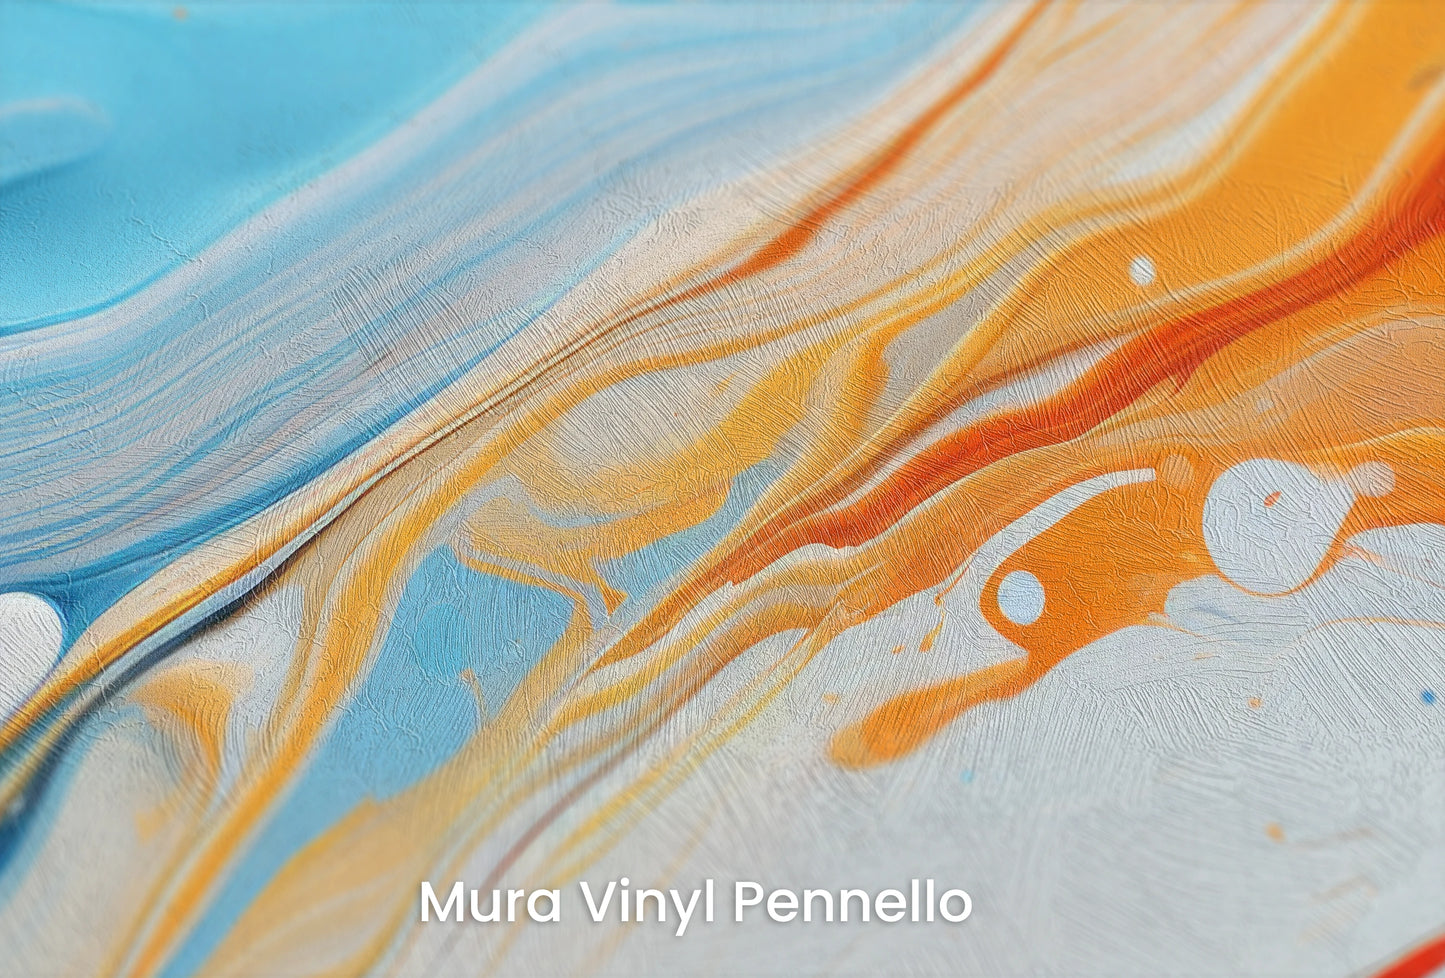 Zbliżenie na artystyczną fototapetę o nazwie Saturn's Serenity na podłożu Mura Vinyl Pennello - faktura pociągnięć pędzla malarskiego.